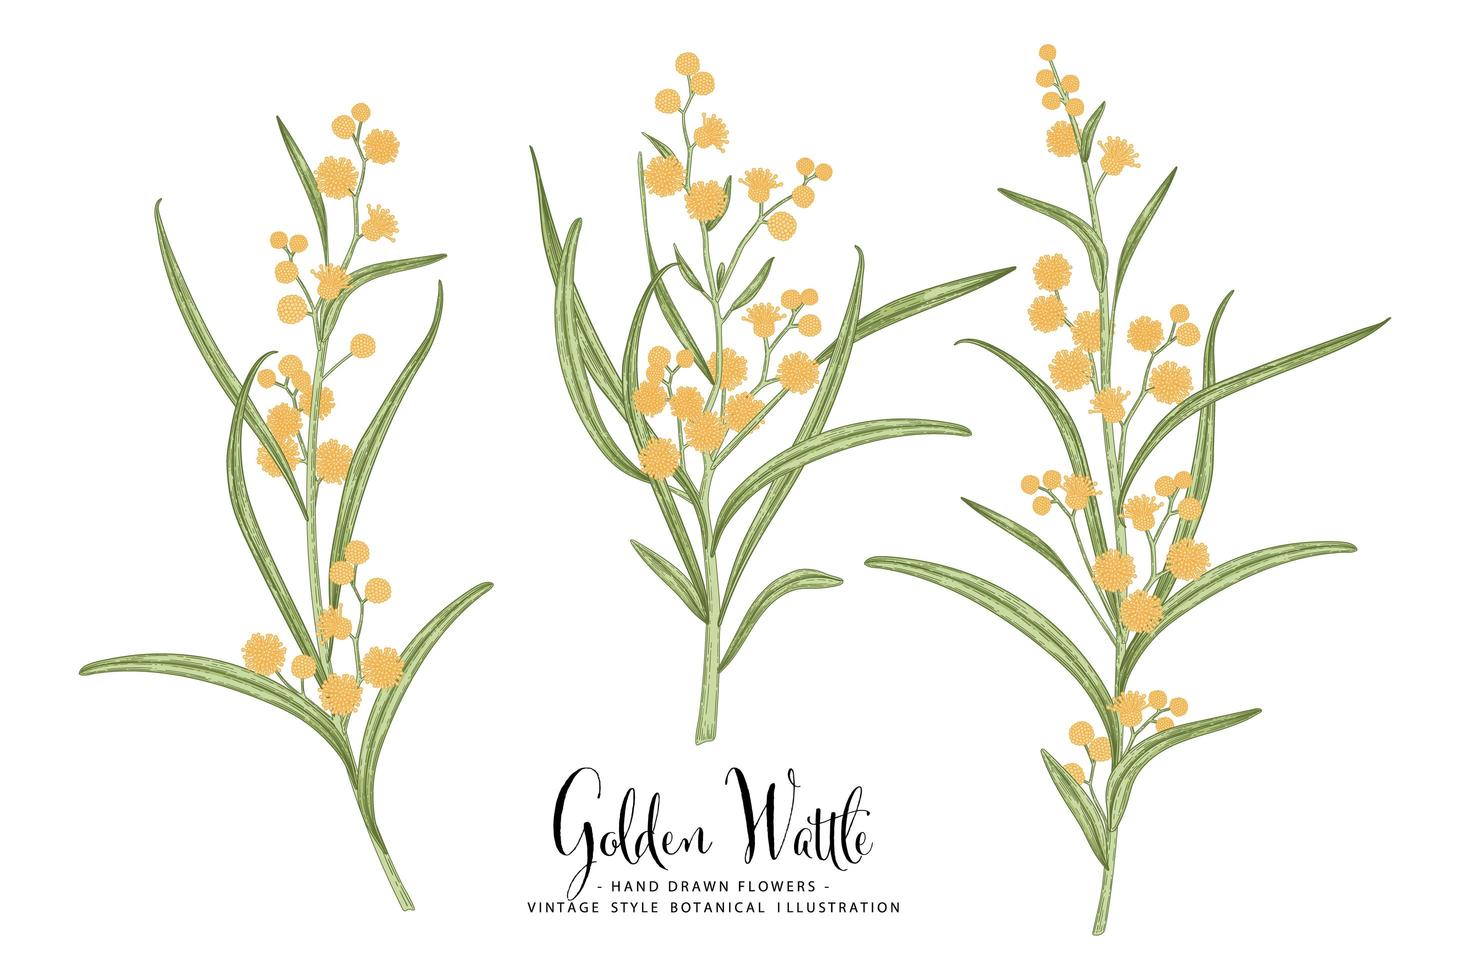 Zweig des goldenen Fleisches oder der Akazie pycnantha mit Blumen und Blättern Hand gezeichnete botanische Illustrationen dekorative Reihe vektor